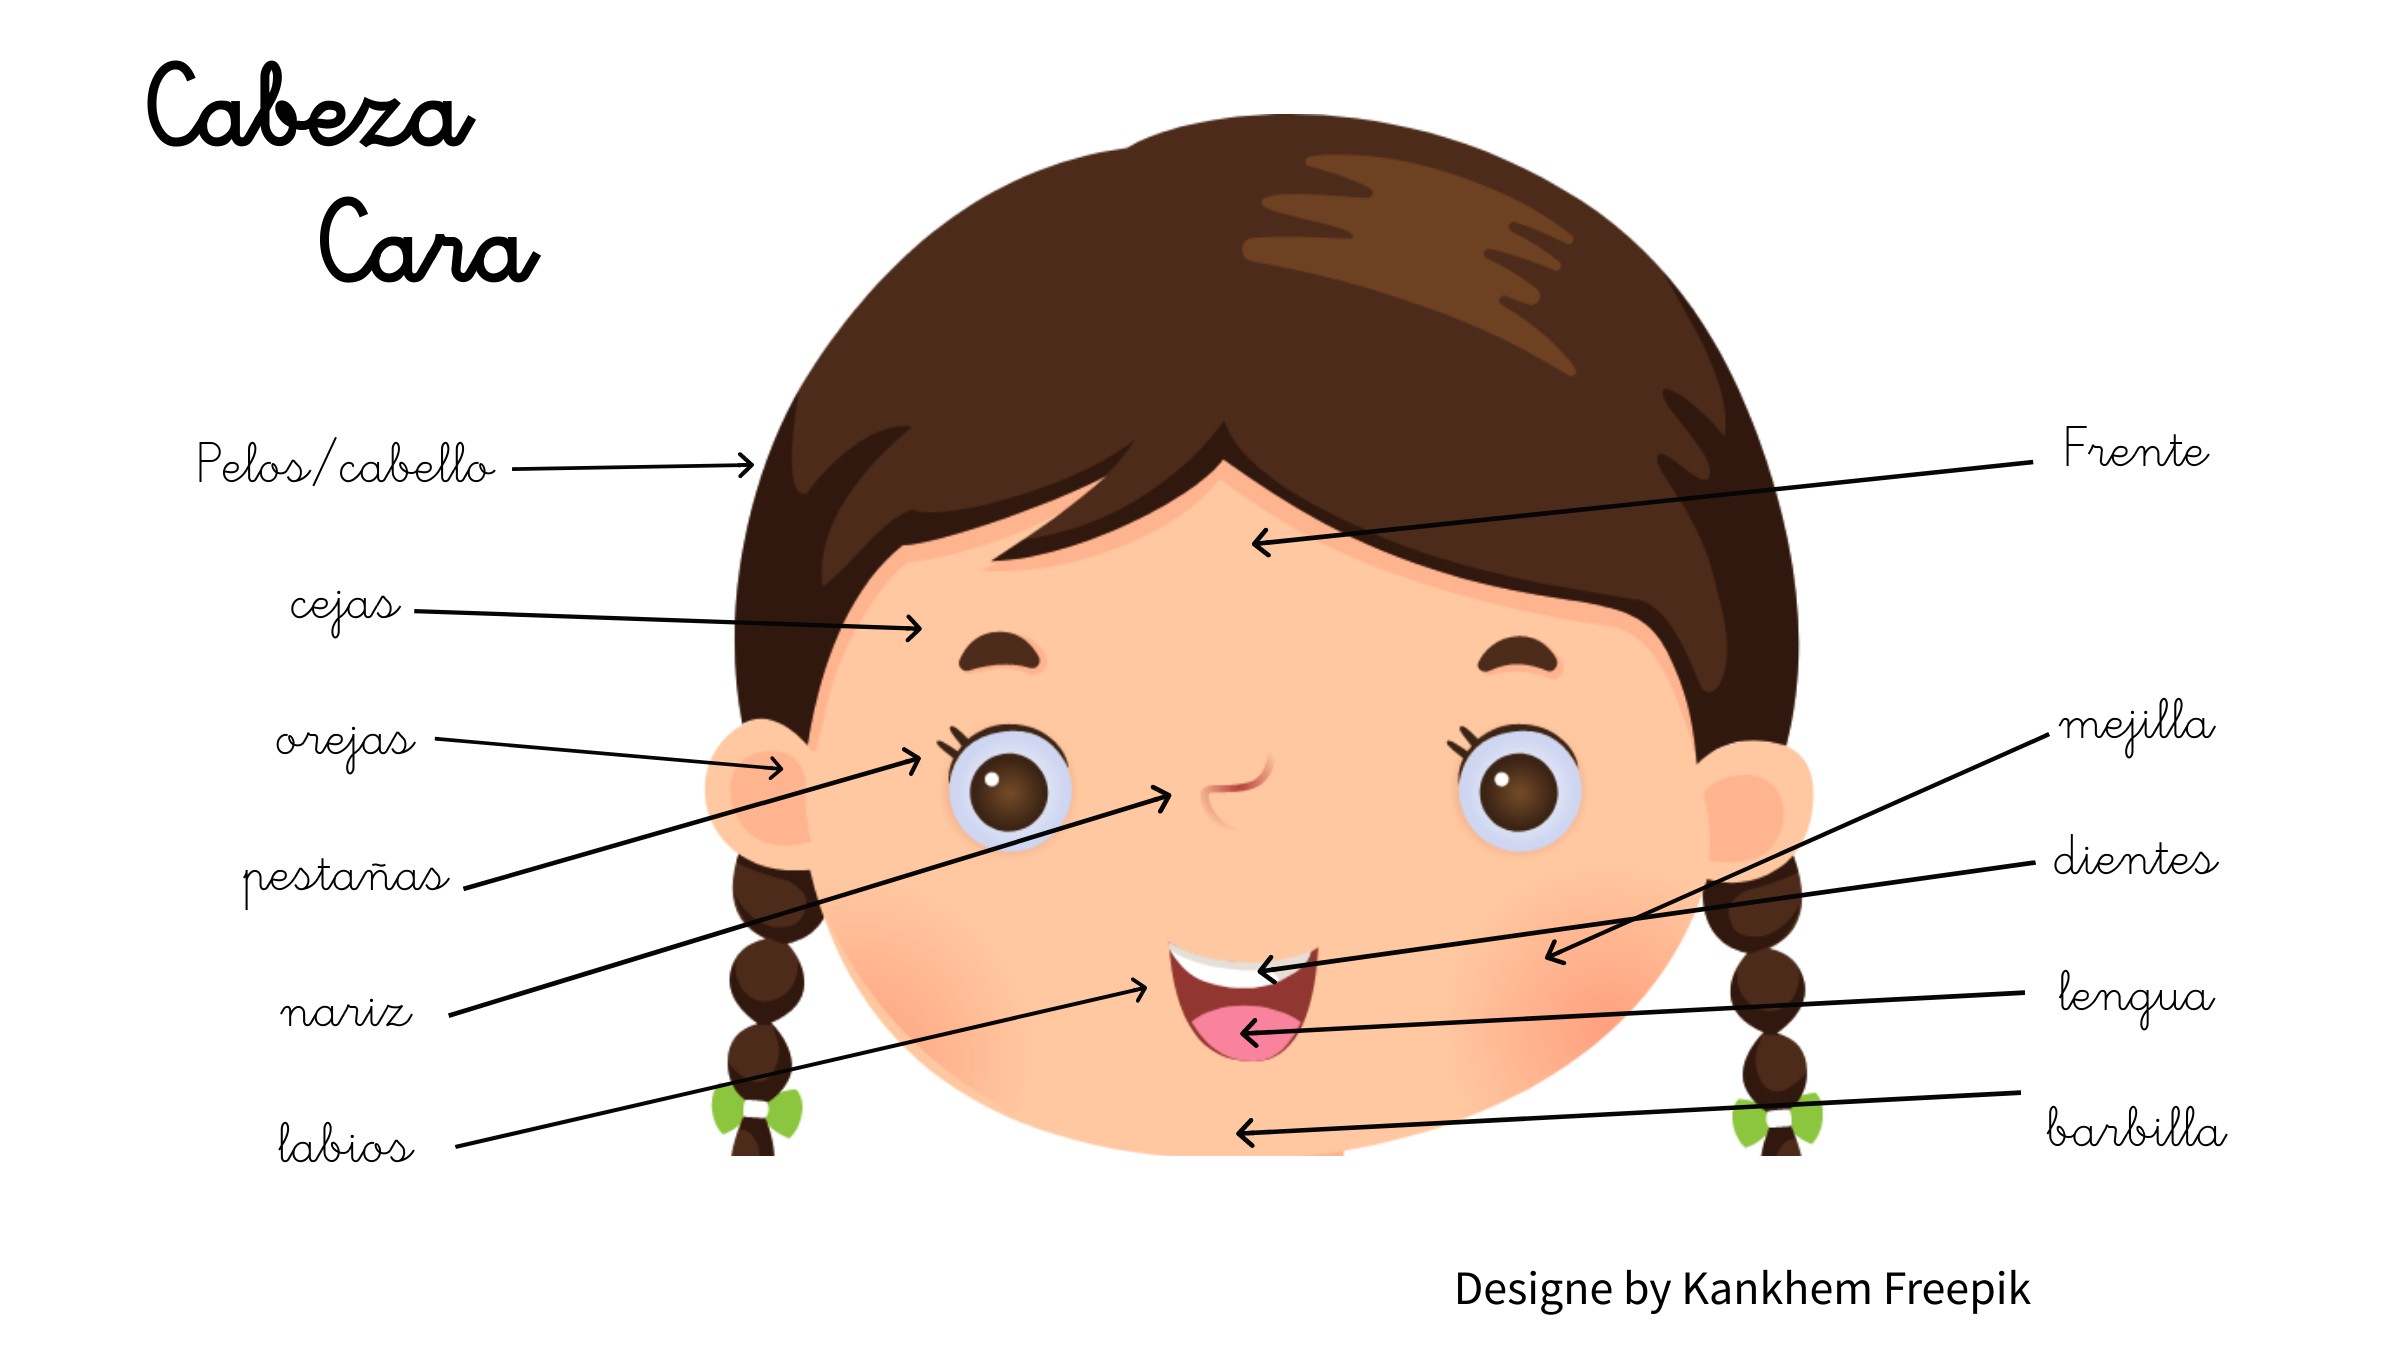 Imagen de la cabeza de una niña nombrando las distintas partes.